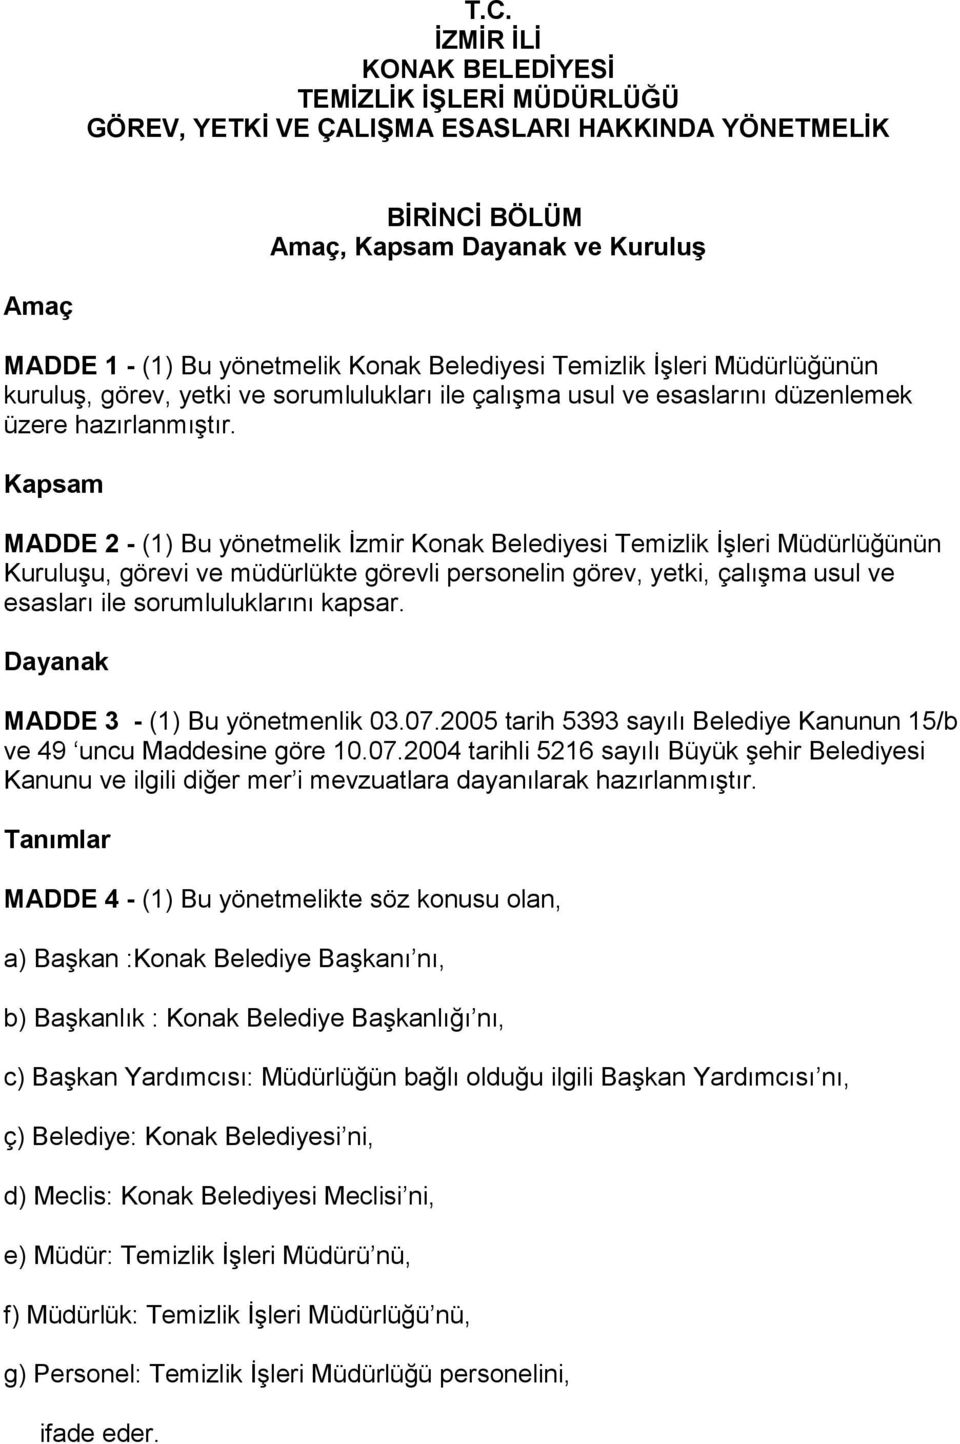 Kapsam MADDE 2 - (1) Bu yönetmelik İzmir Konak Belediyesi Temizlik İşleri Müdürlüğünün Kuruluşu, görevi ve müdürlükte görevli personelin görev, yetki, çalışma usul ve esasları ile sorumluluklarını